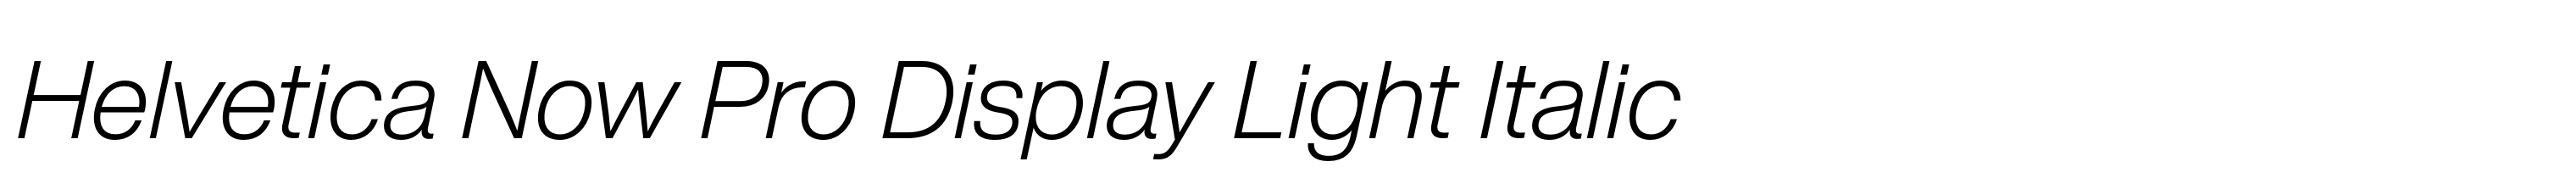 Helvetica Now Pro Display Light Italic